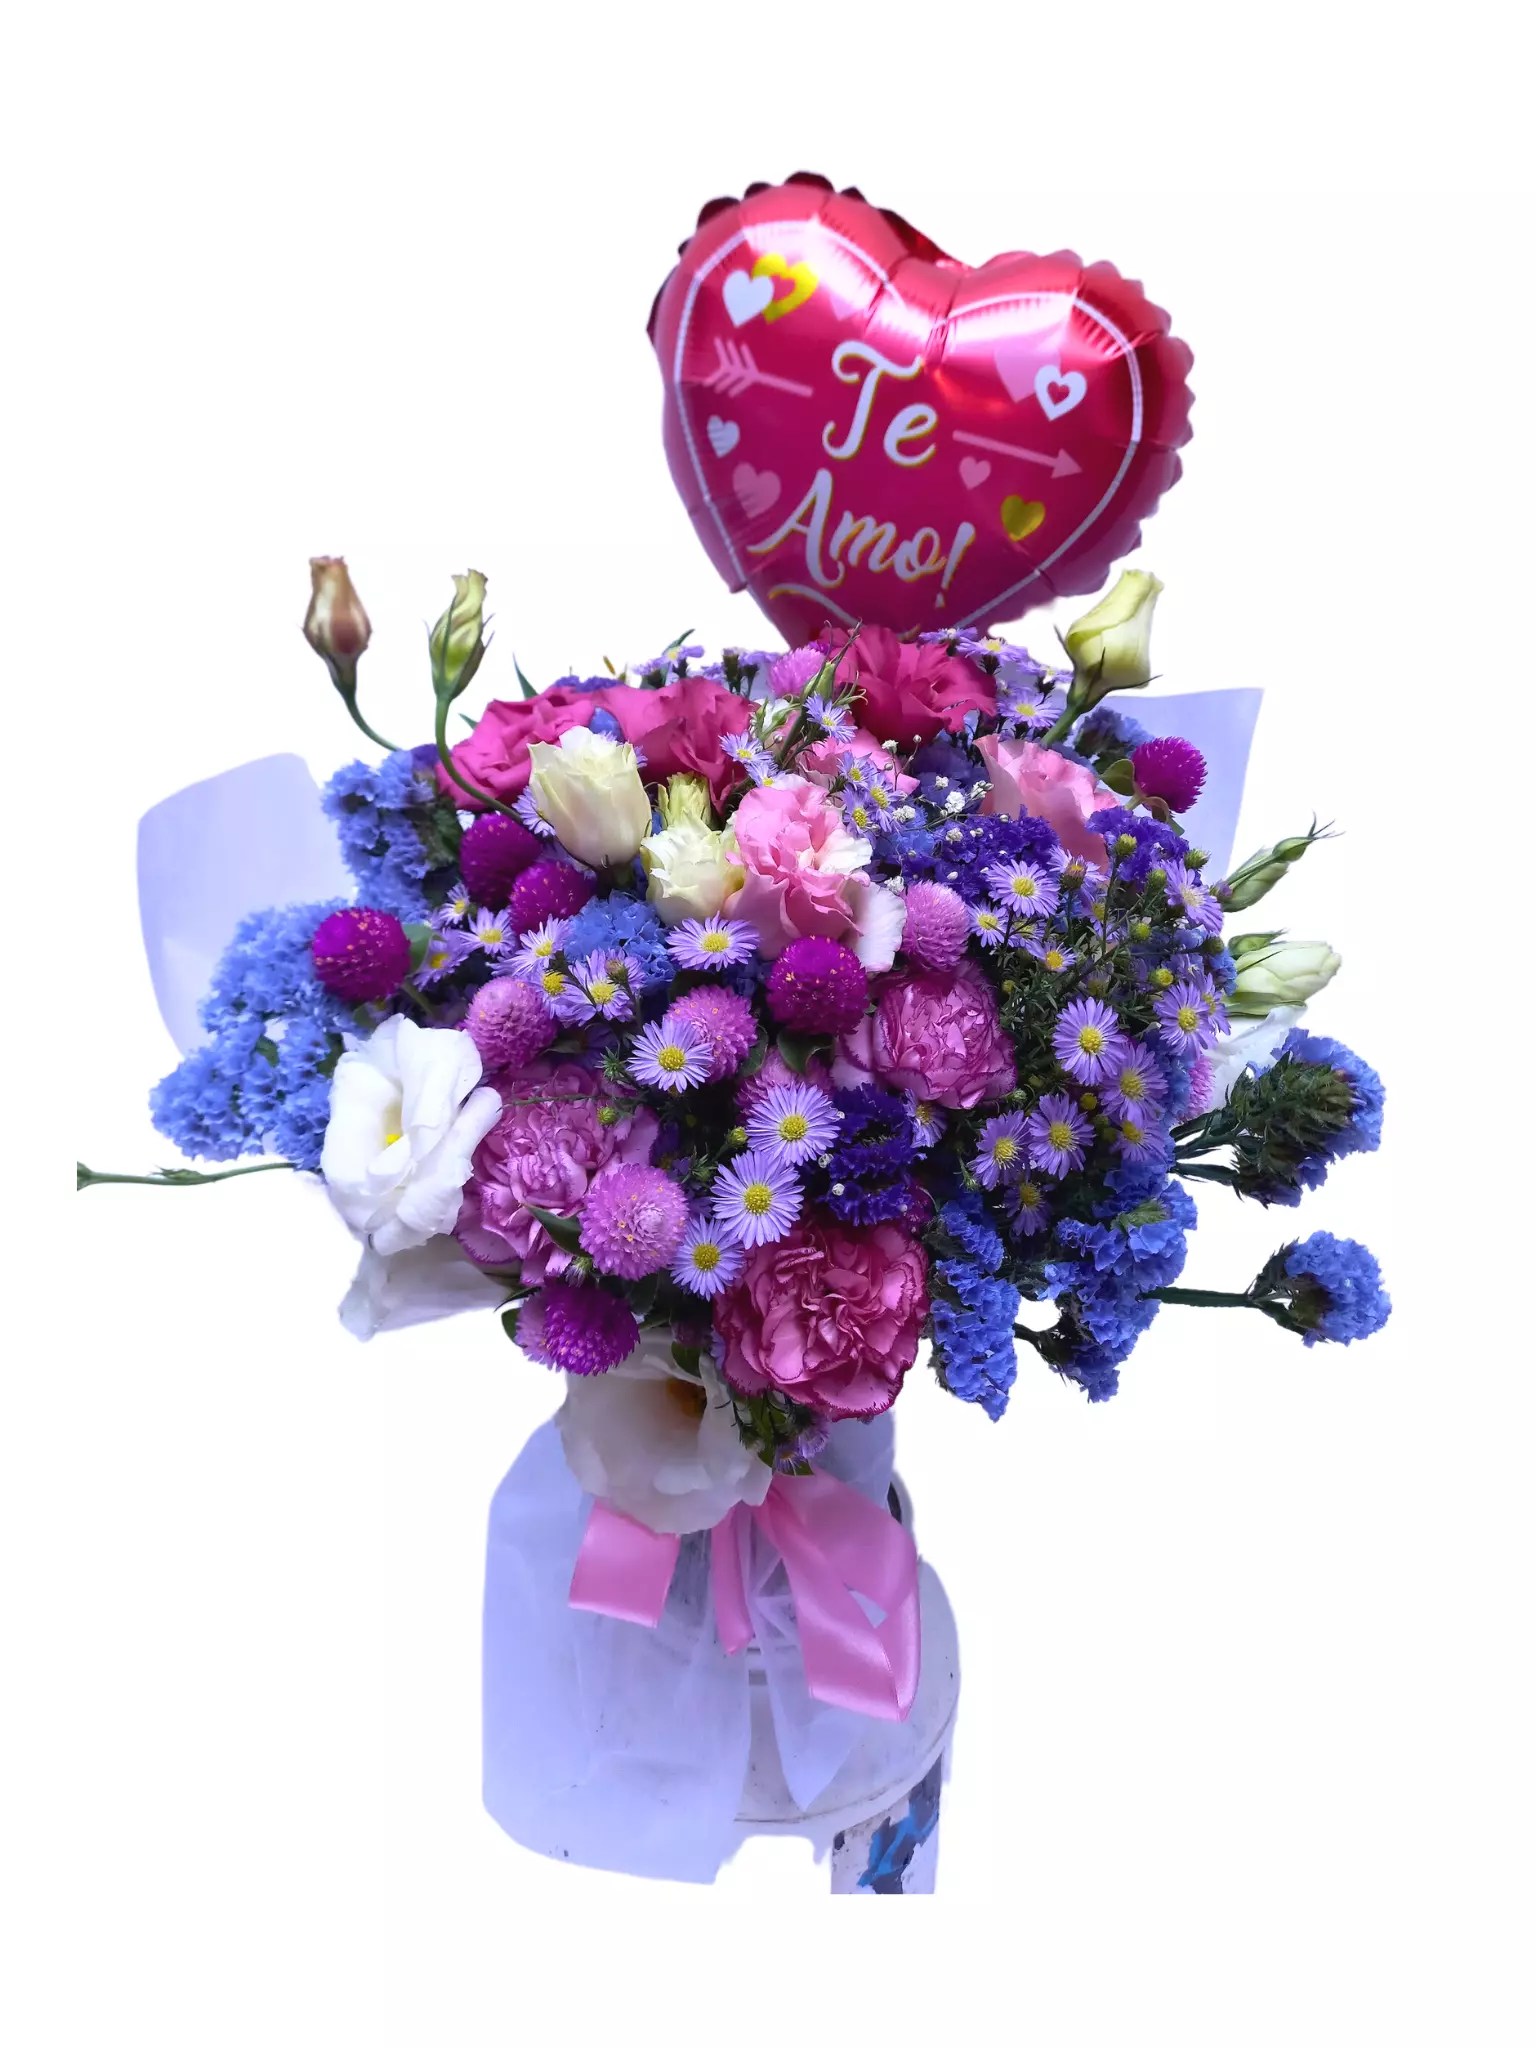 Imagen de Mi amor Descripcion: Ramo con flores violetas y globo corazon 